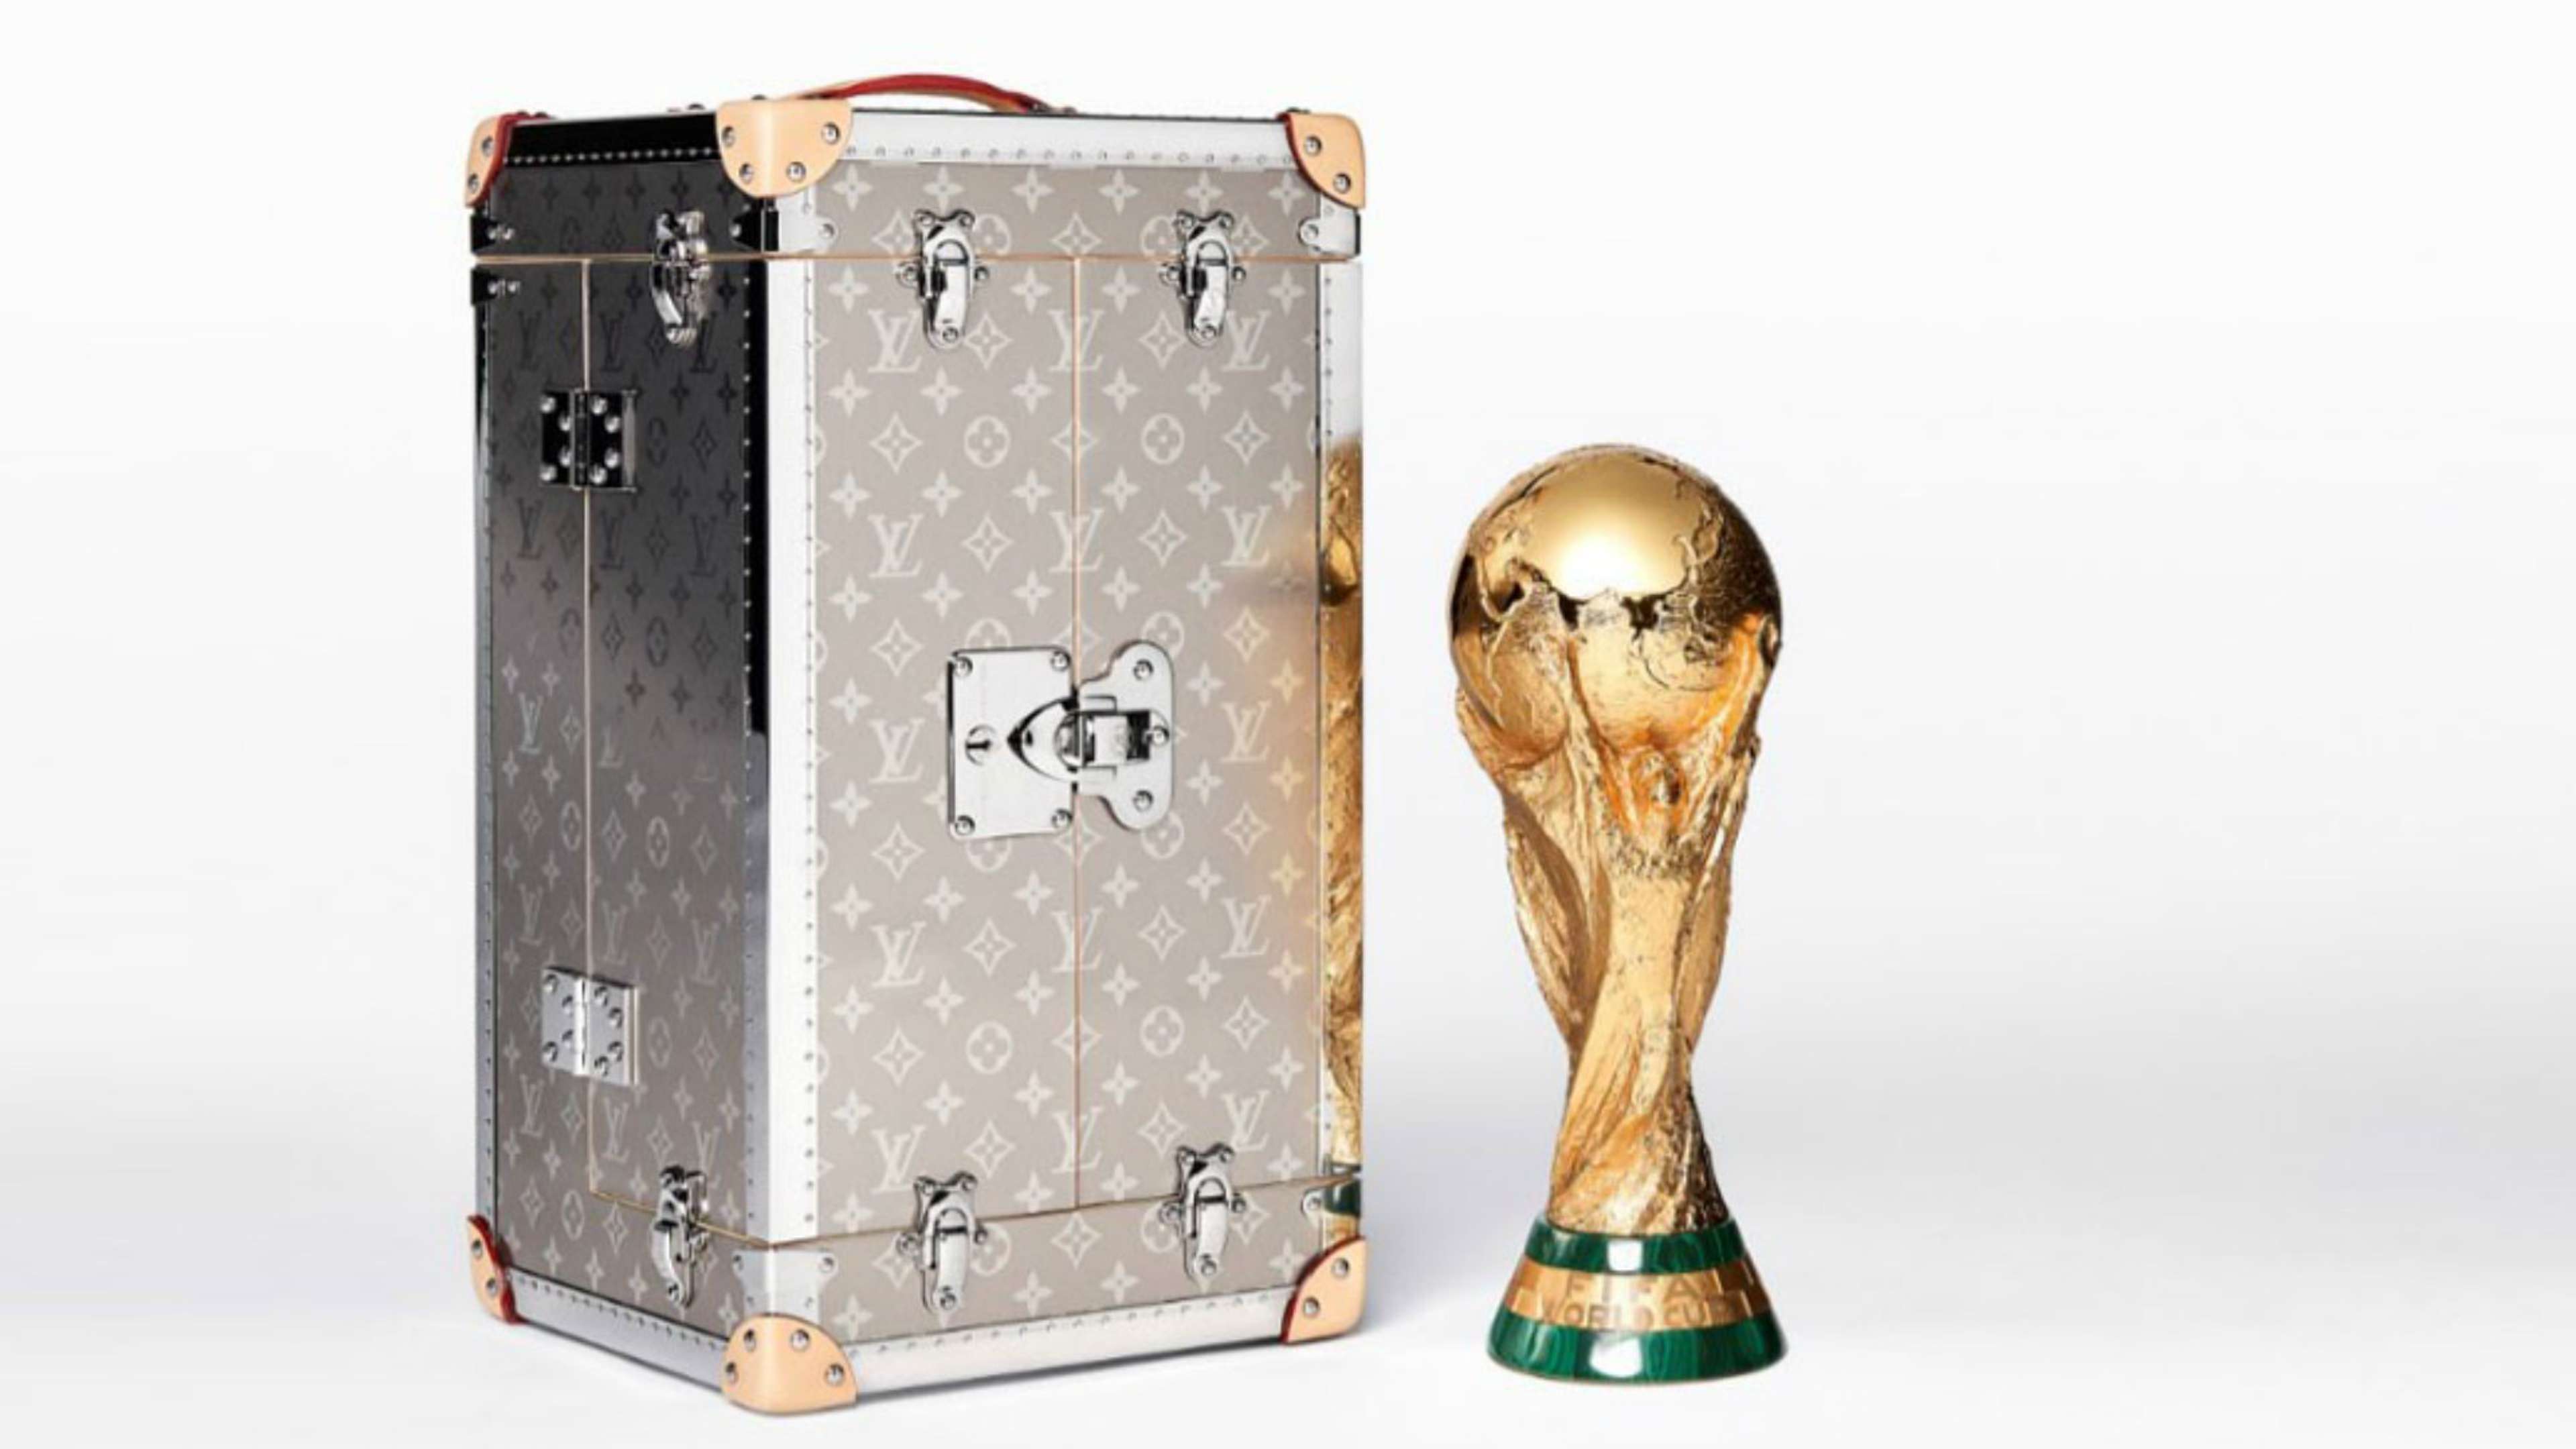 Maletin Louis Vuitton Copa del Mundo FIFA World Cup Case 2018